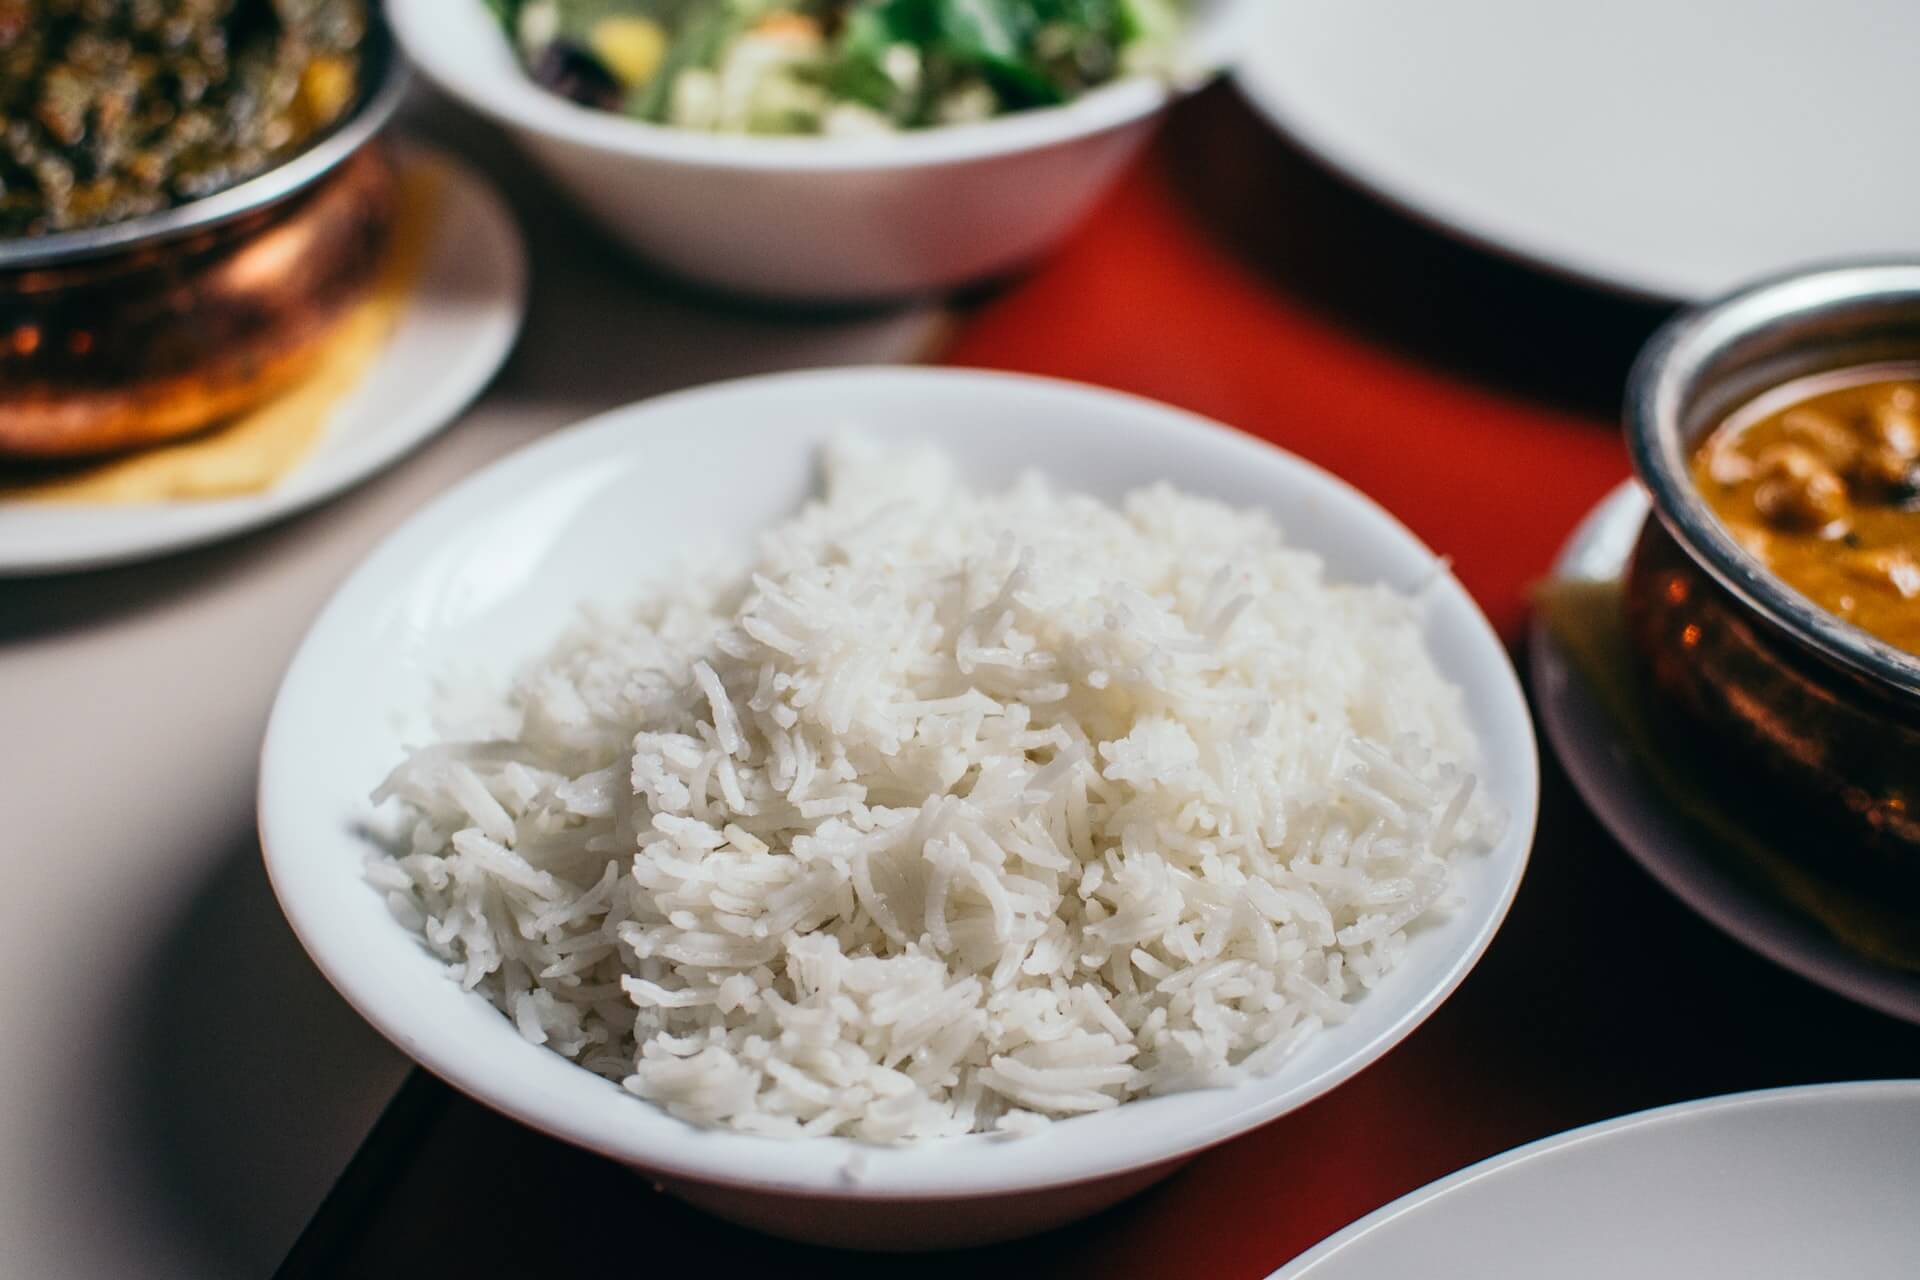 Поставщики риса сообщили о подорожании на 10-30% из-за неурожая